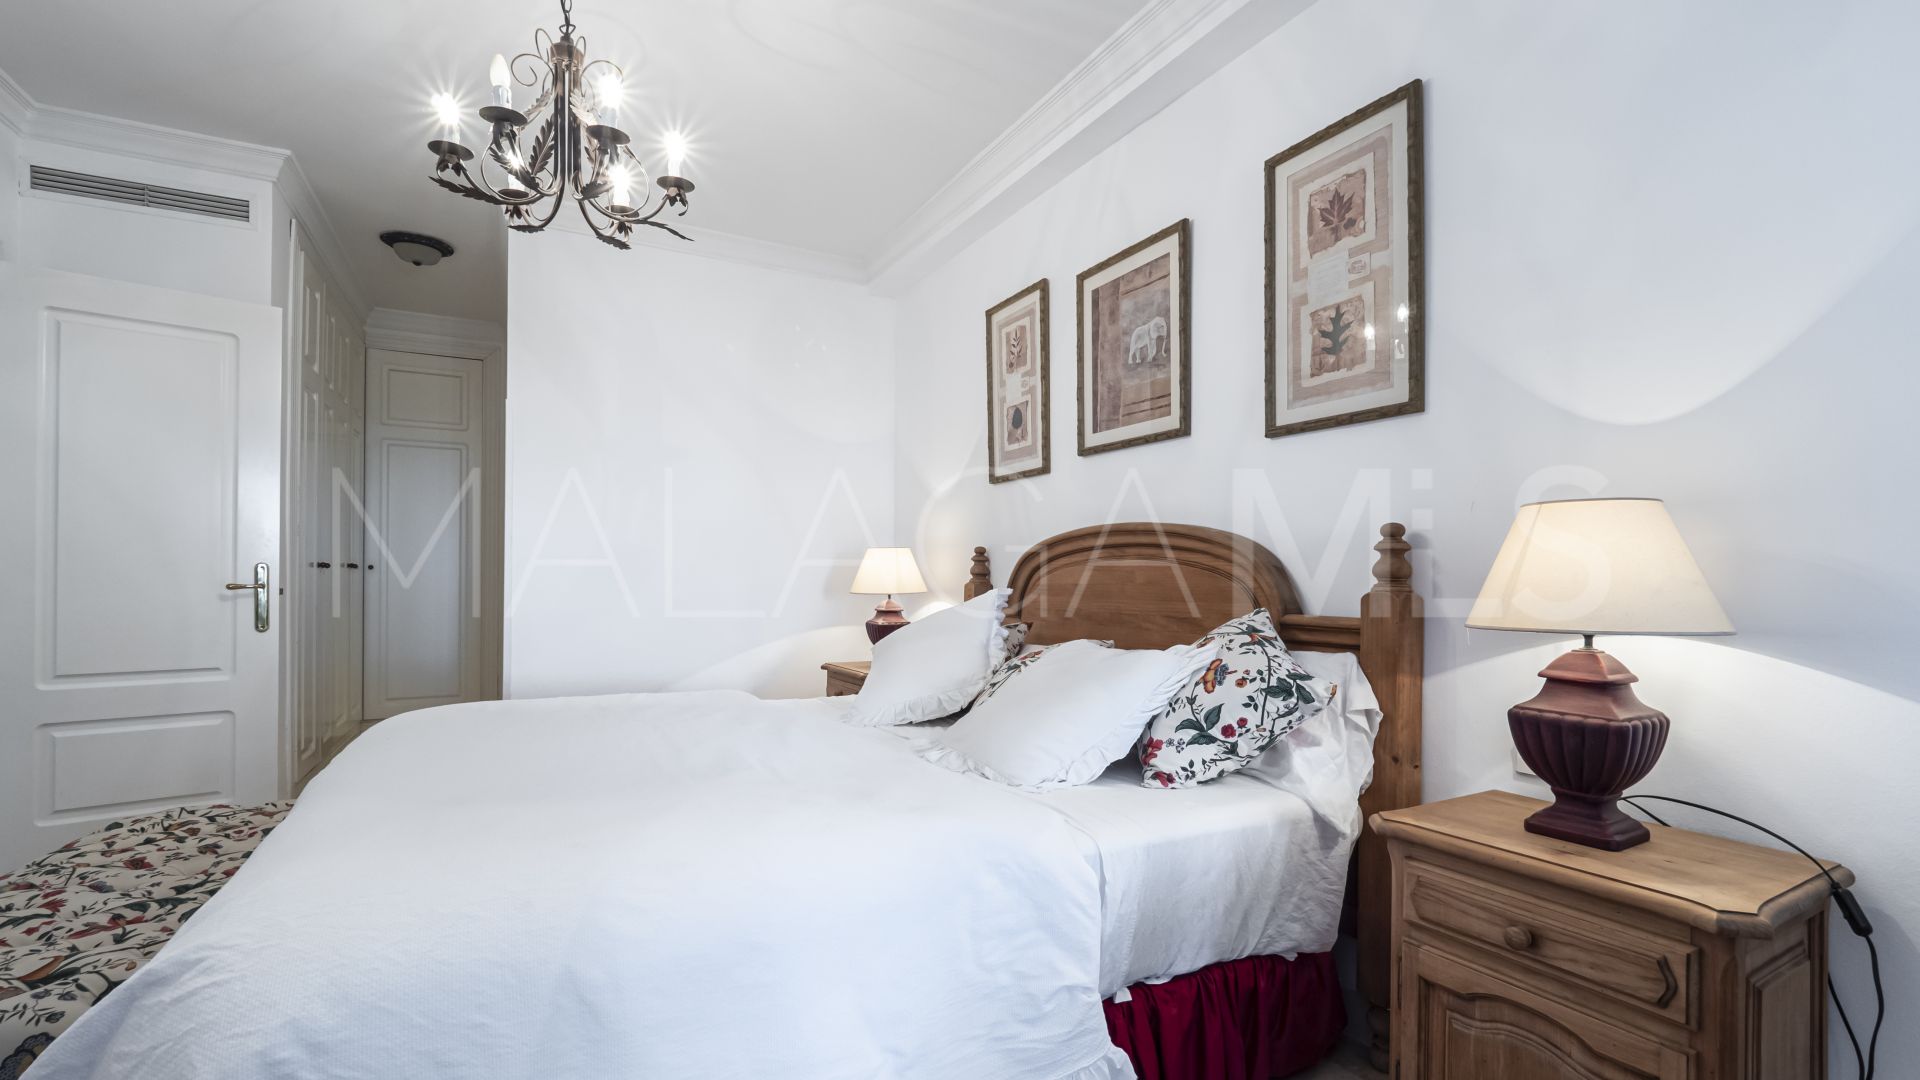 Apartment with 2 bedrooms for sale in La Herradura